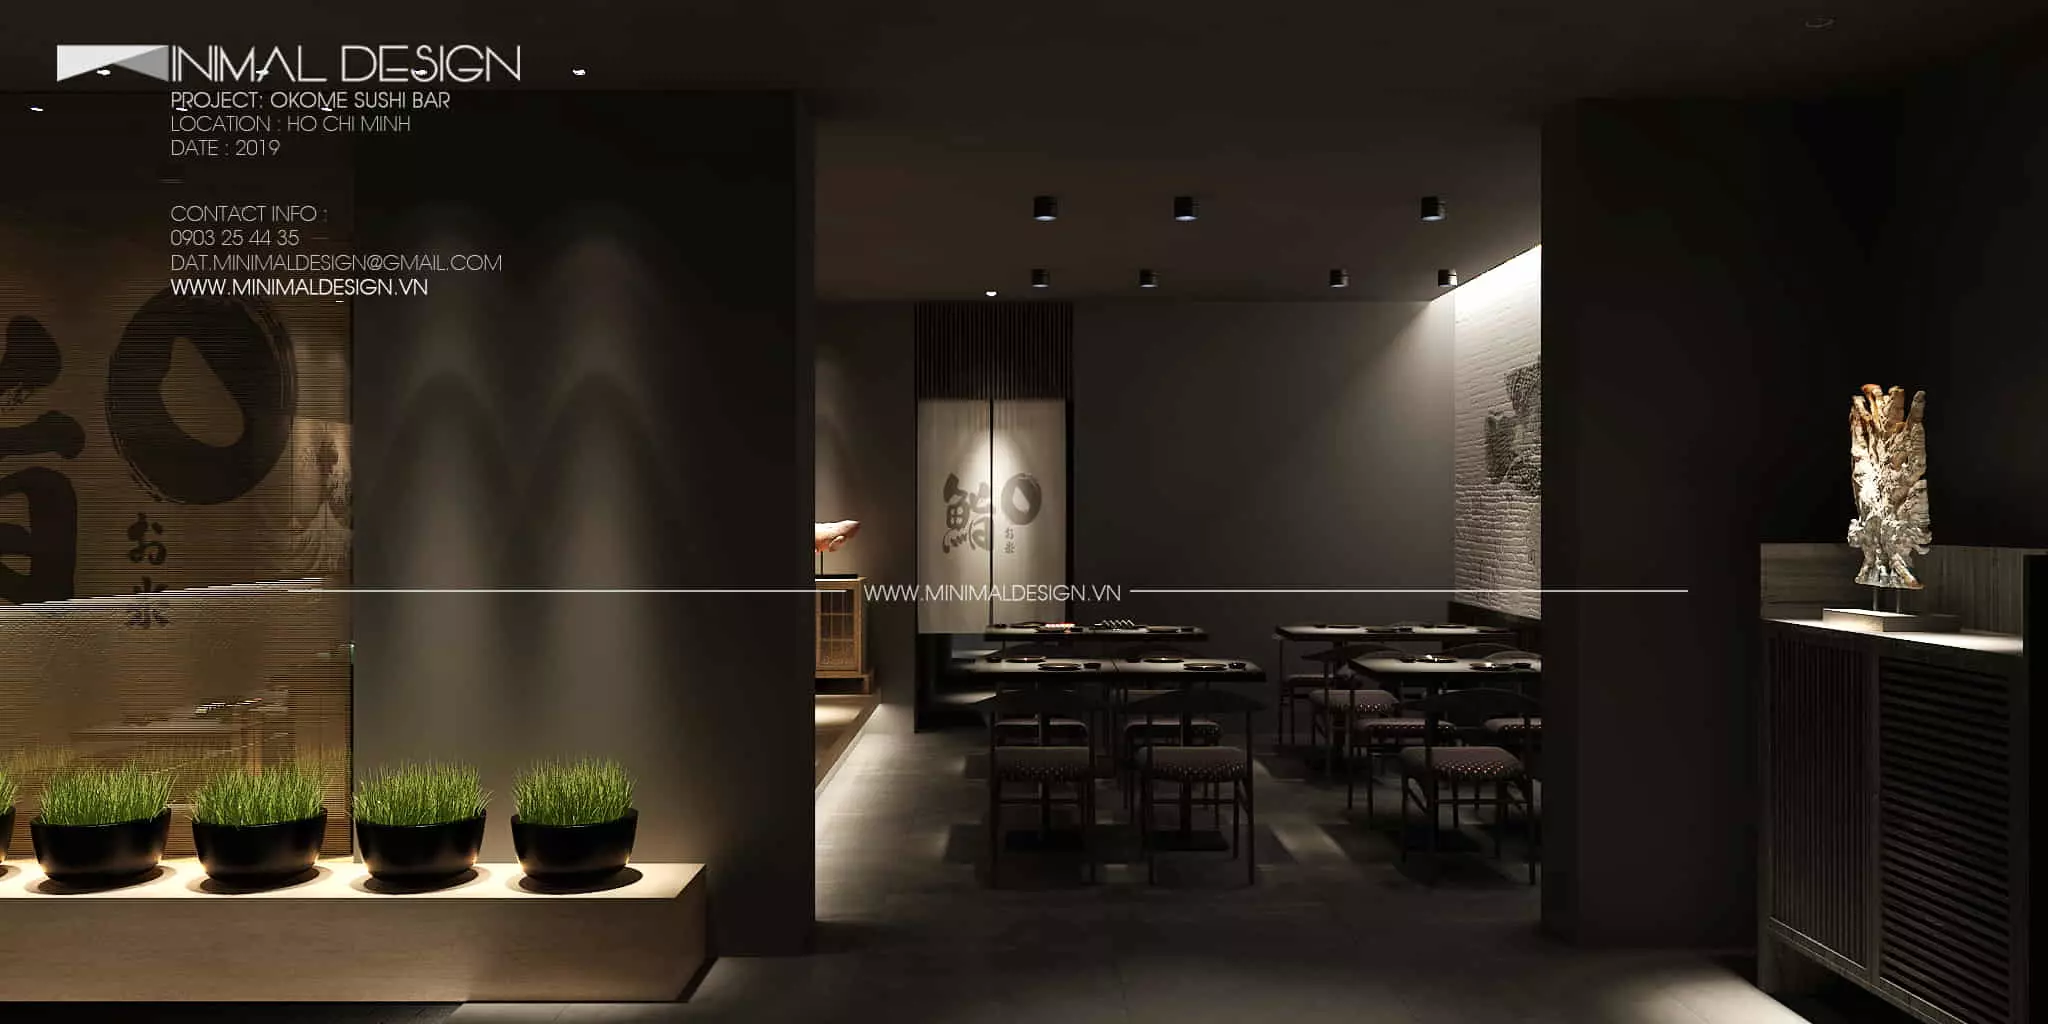 thiết kế nội thất nhà hàng Okome Sushi Bar dựa trên chủ đề đặt ra là gạo, nên những thiết kế nội thất đều lấy tone màu thiên nhiên của lúa non, đất và đá